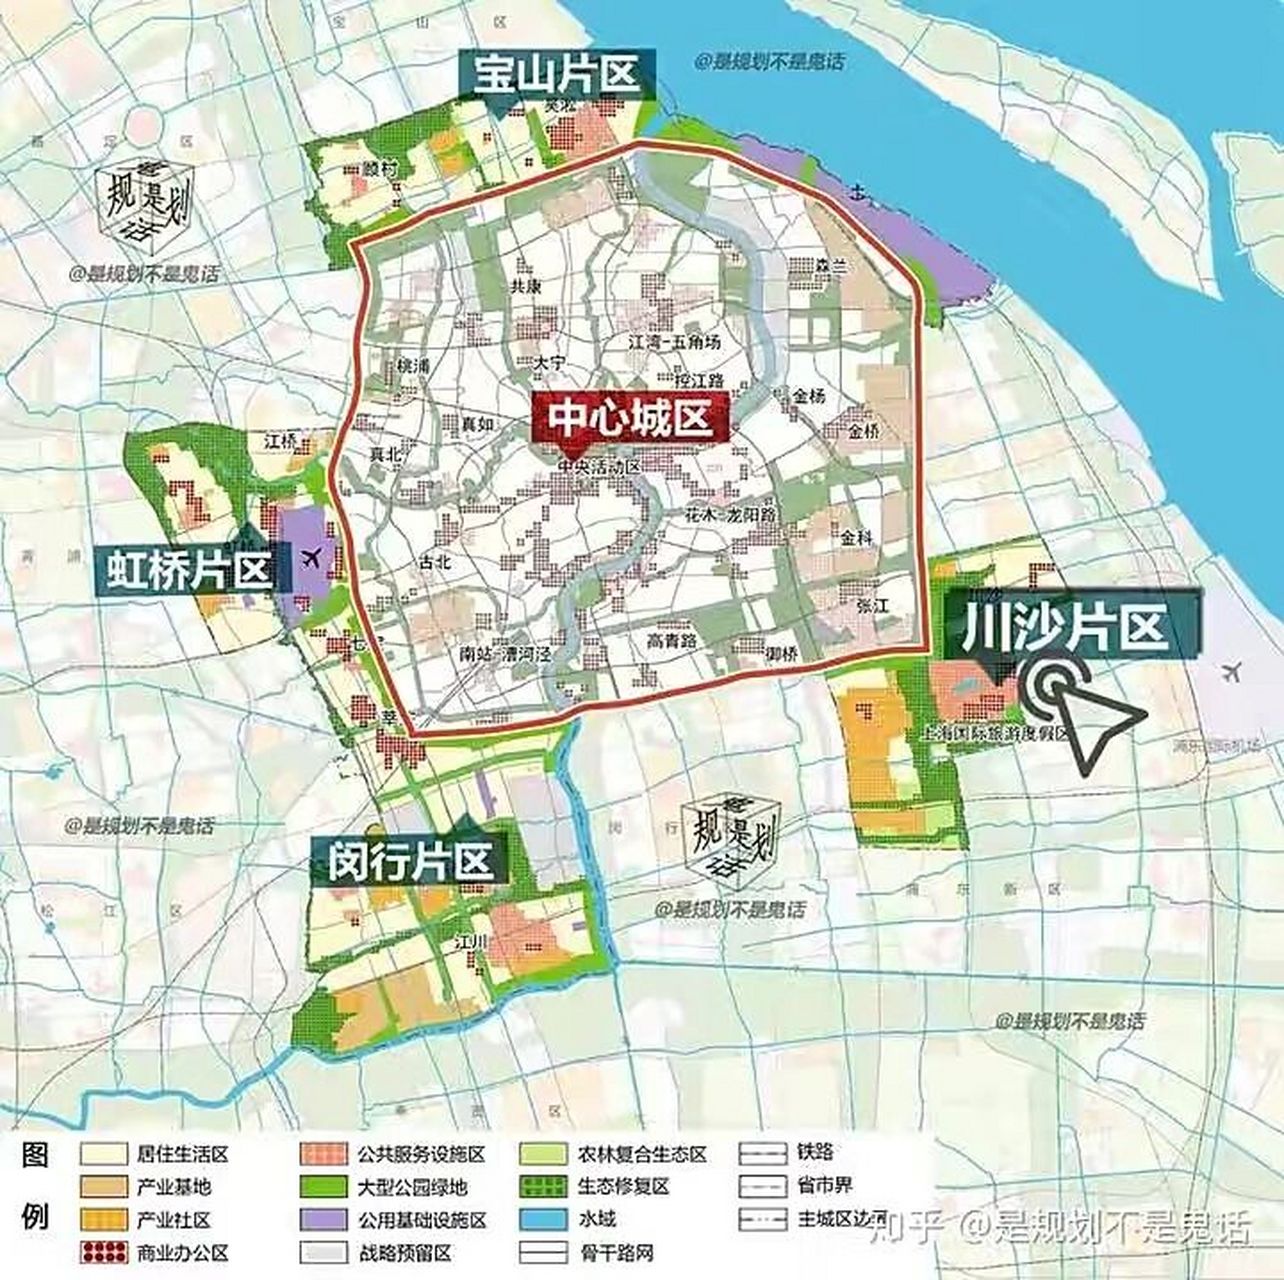 规划图 1,闵行区2035被纳入一城四片即与虹桥,宝山,川沙同为上海